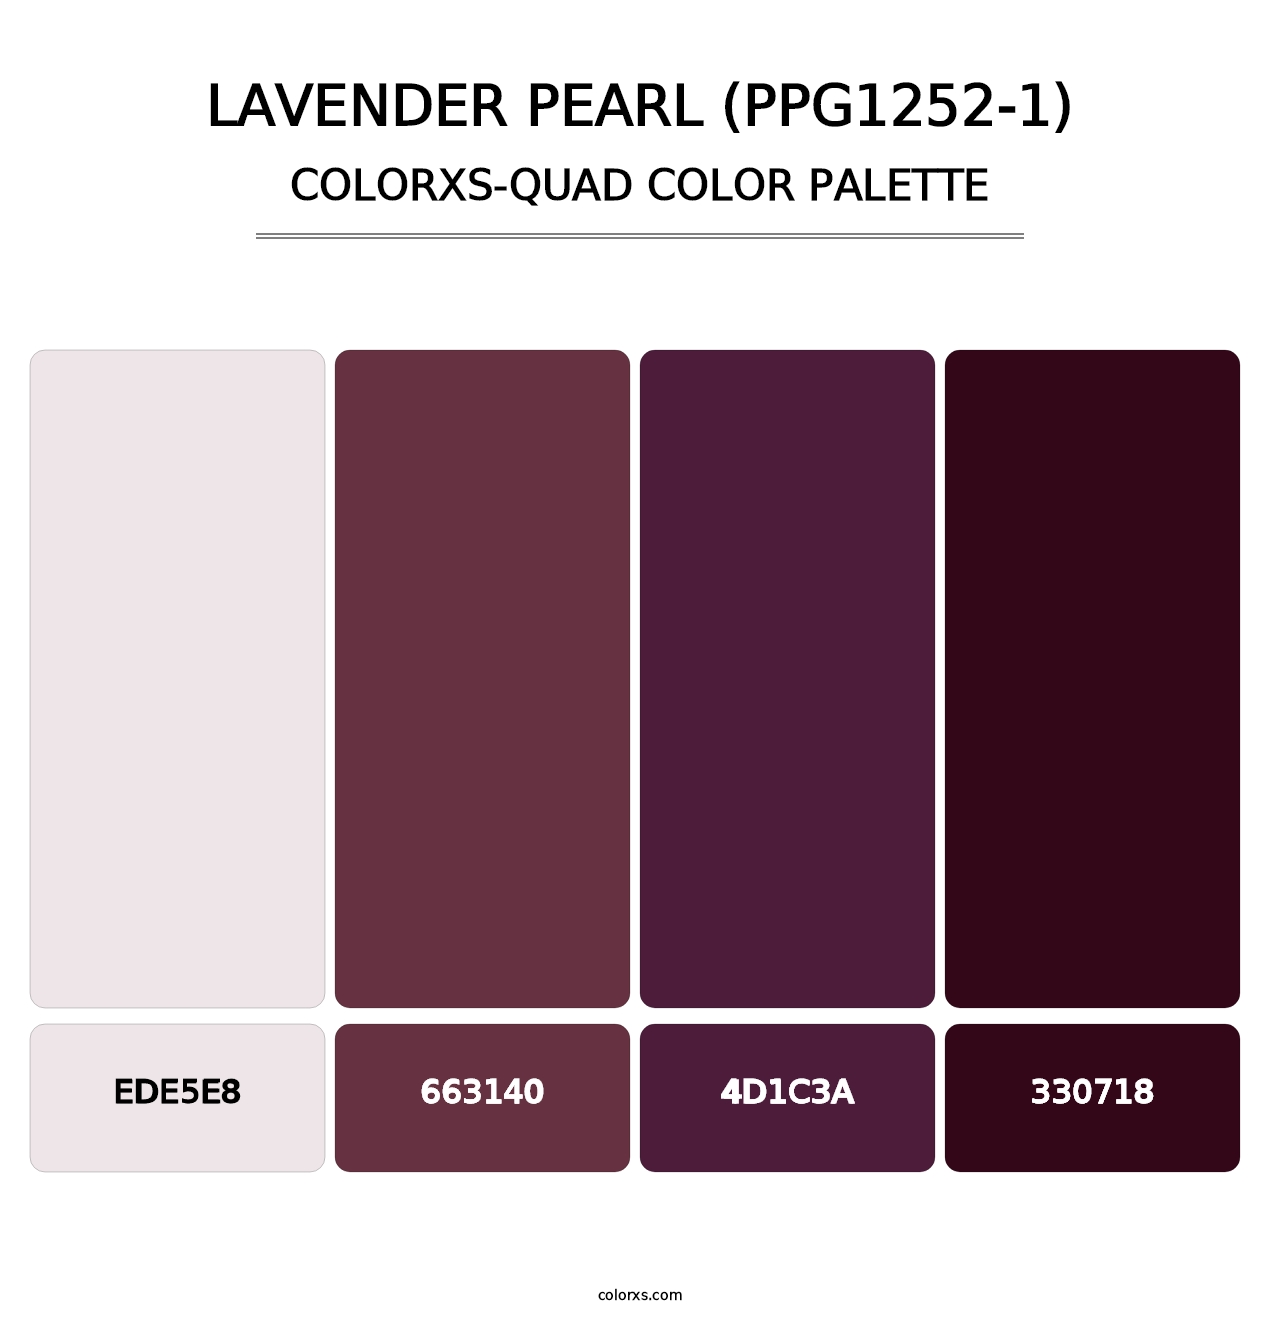 Lavender Pearl (PPG1252-1) - Colorxs Quad Palette